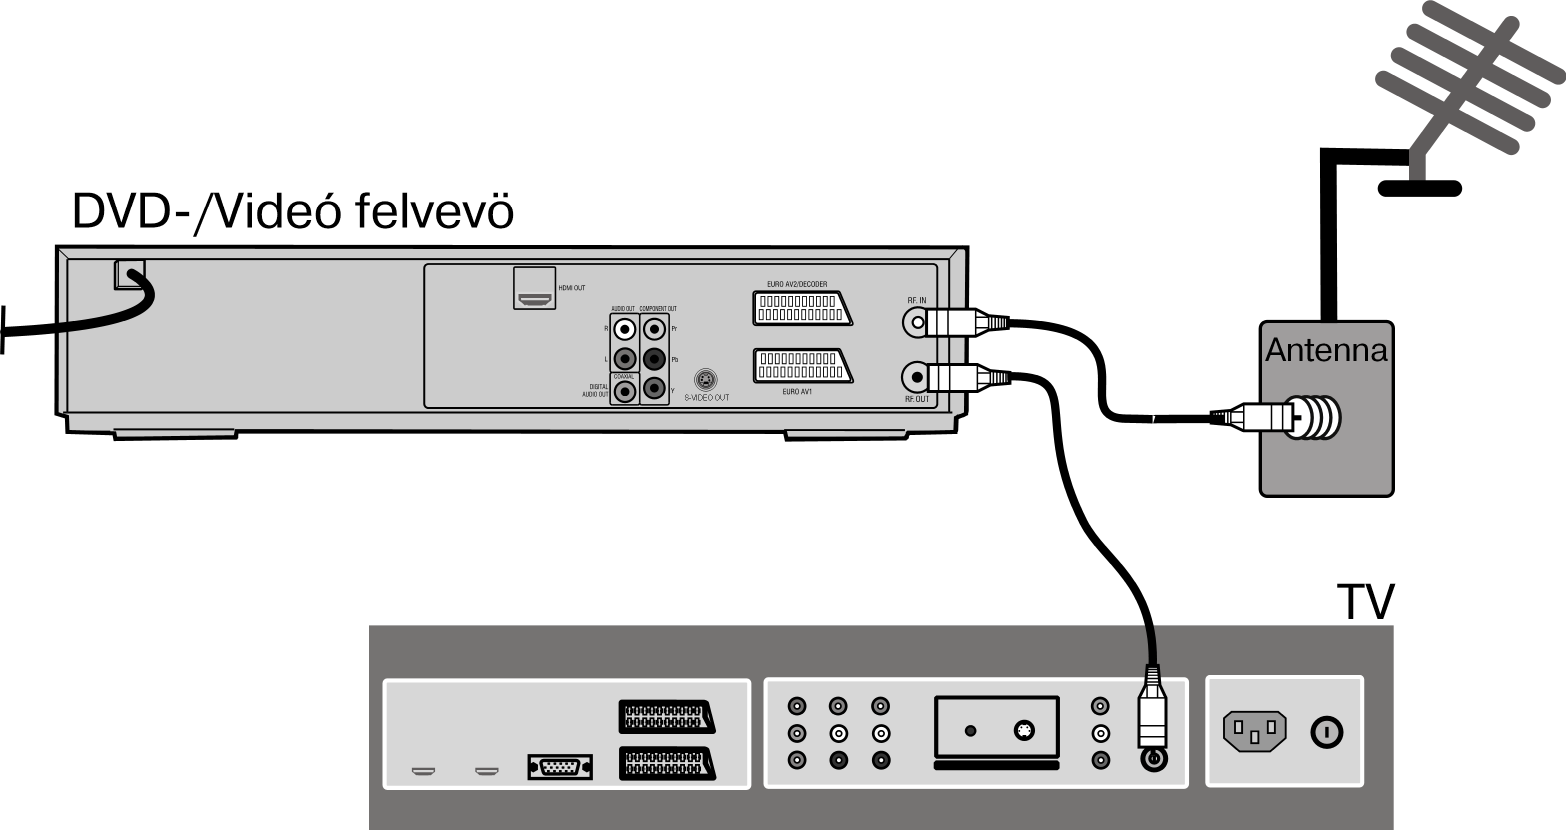 Csatlakozók és csatlakoztatási lehetőségek A DVD/videófelvevőt sokféle módon össze lehet kötni más bemeneti és kimeneti készülékkel: televíziós készülékkel erősítővel / receiver-rel videó készülékkel